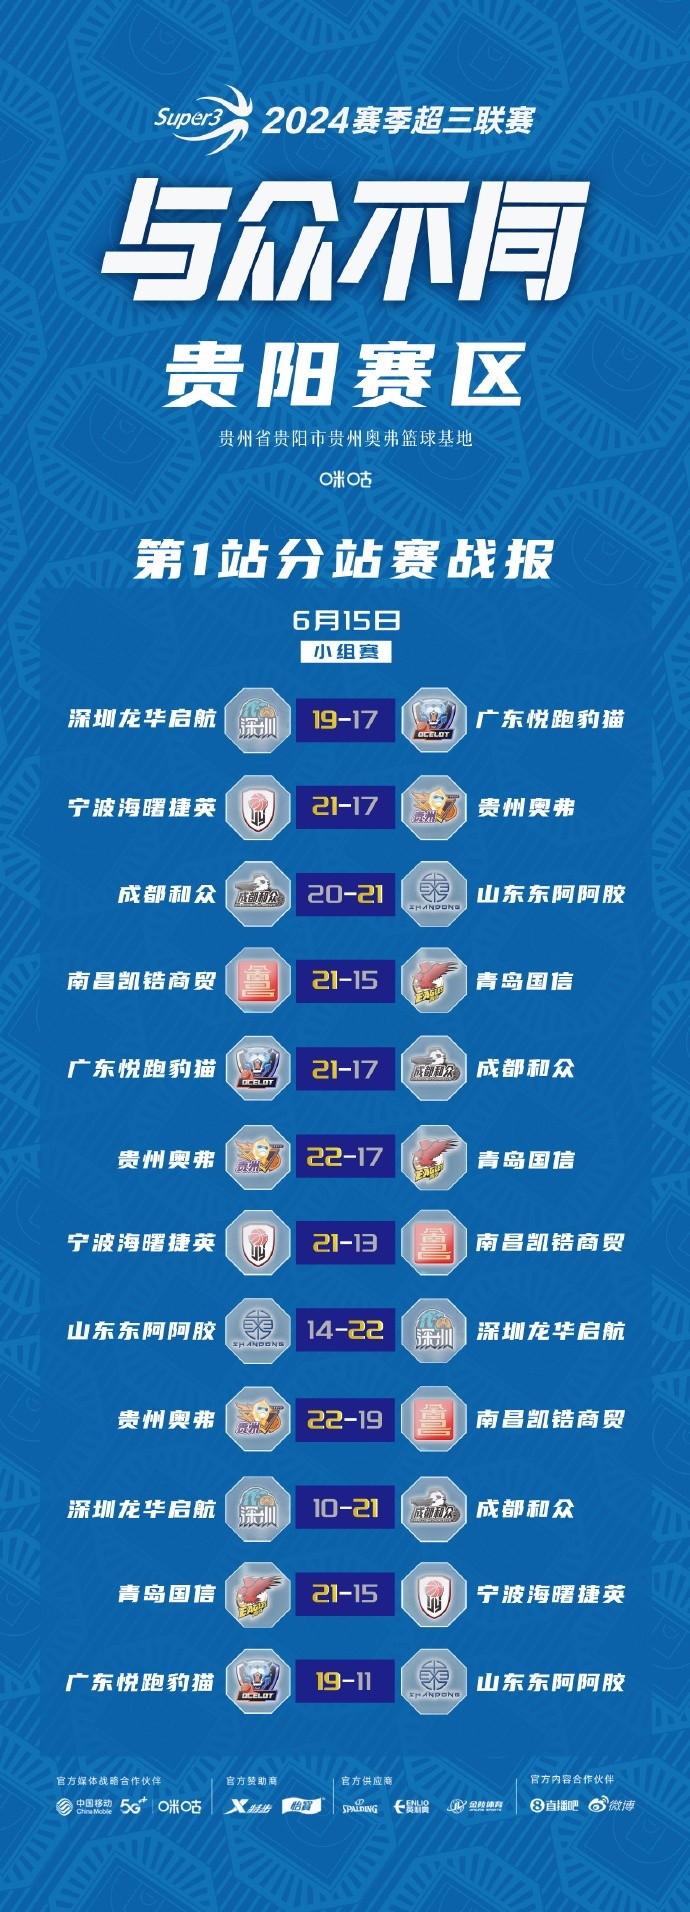 超三联赛贵阳、武汉赛区今日结束小组赛 明天进入淘汰赛阶段